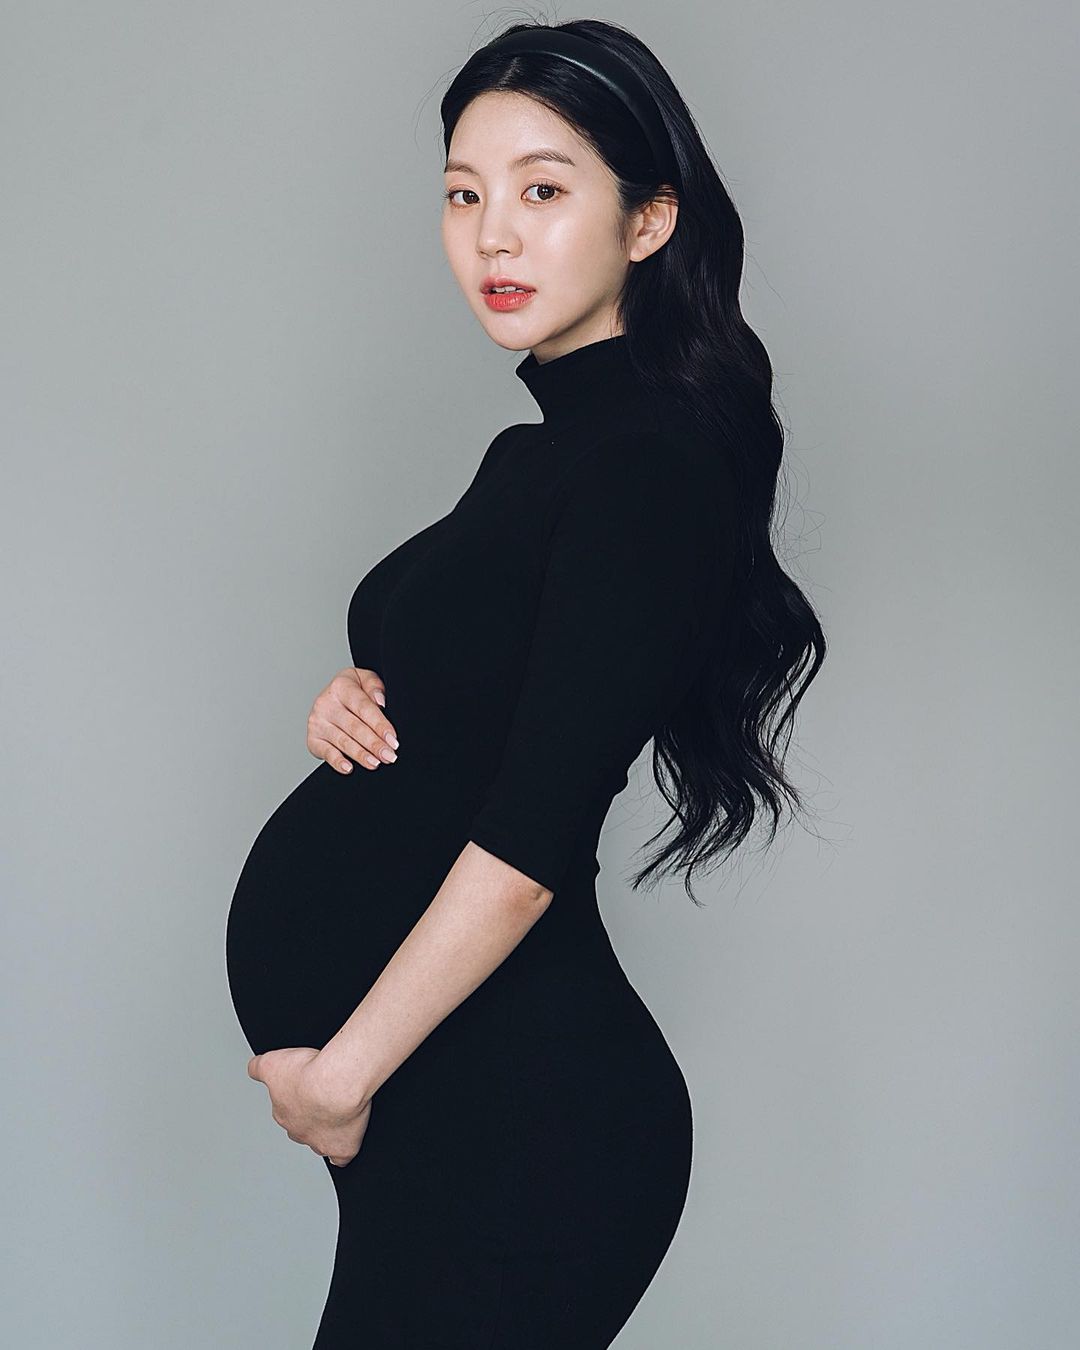 Mẫu nội y Hàn Quốc sau sinh nở vẫn gợi cảm như xưa, được fan nam ái mộ - 5